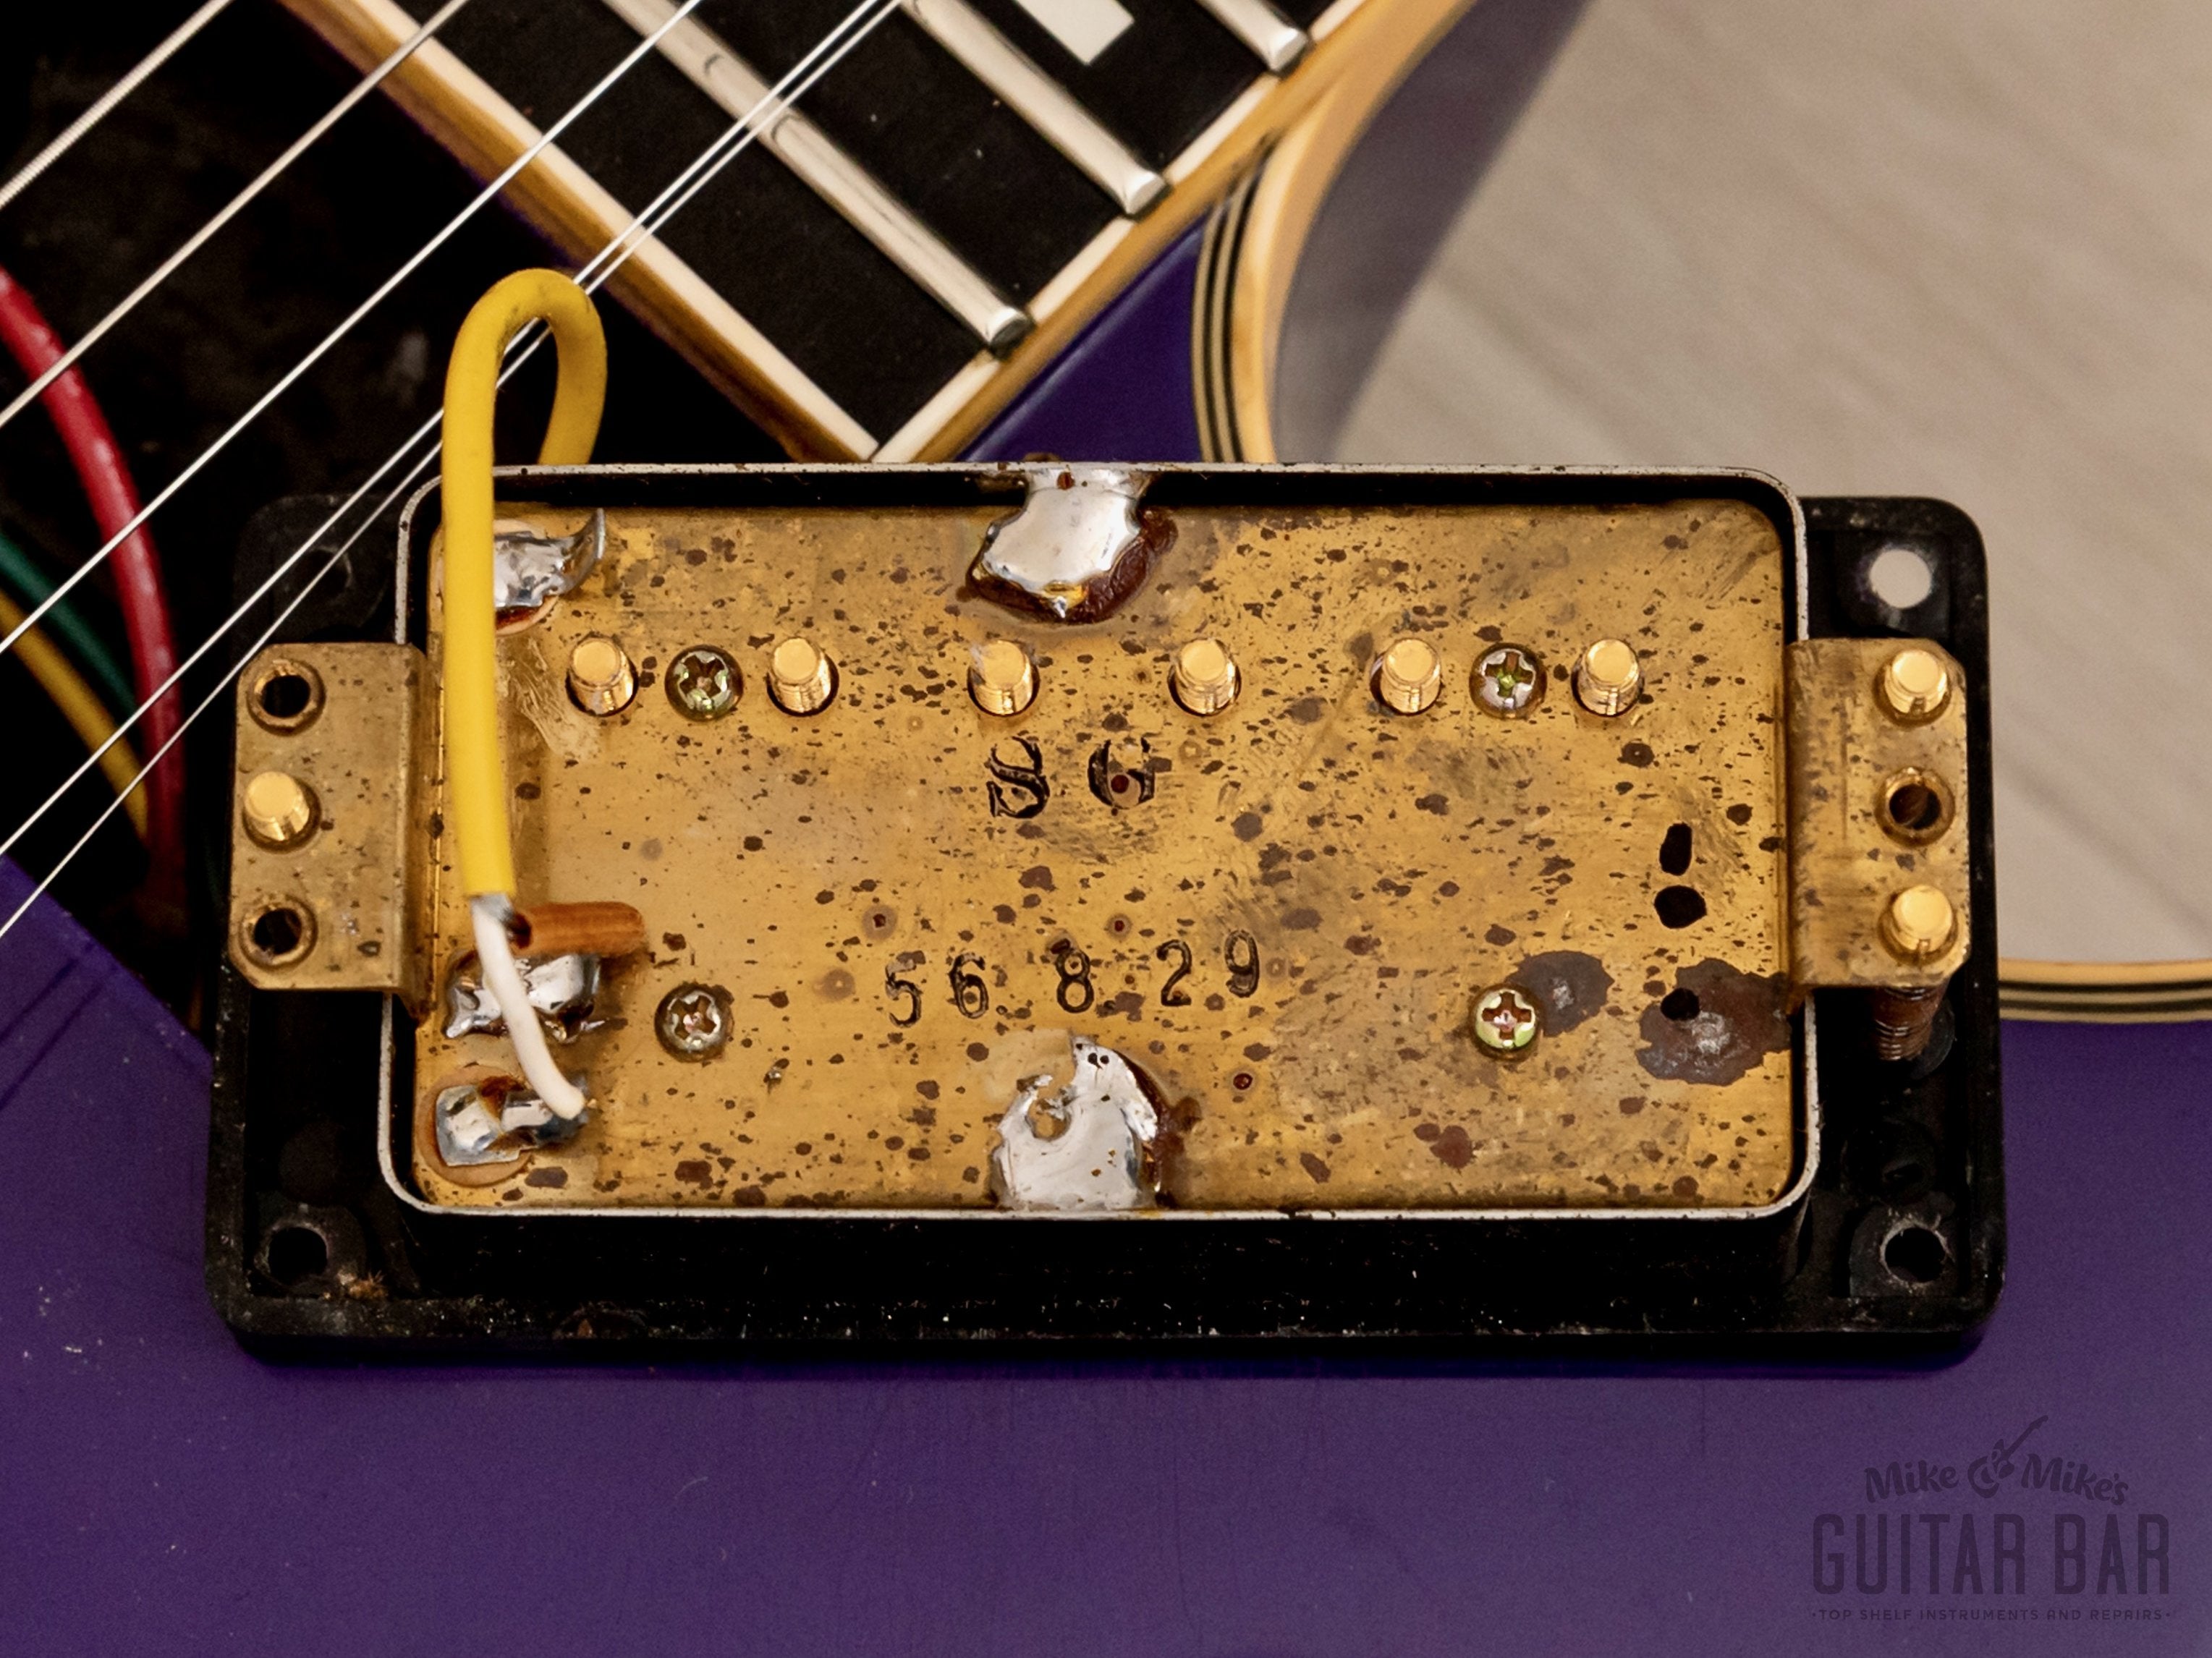 1981 Yamaha SG2000DP Vintage Electric Guitar Deep Purple, 100% Original